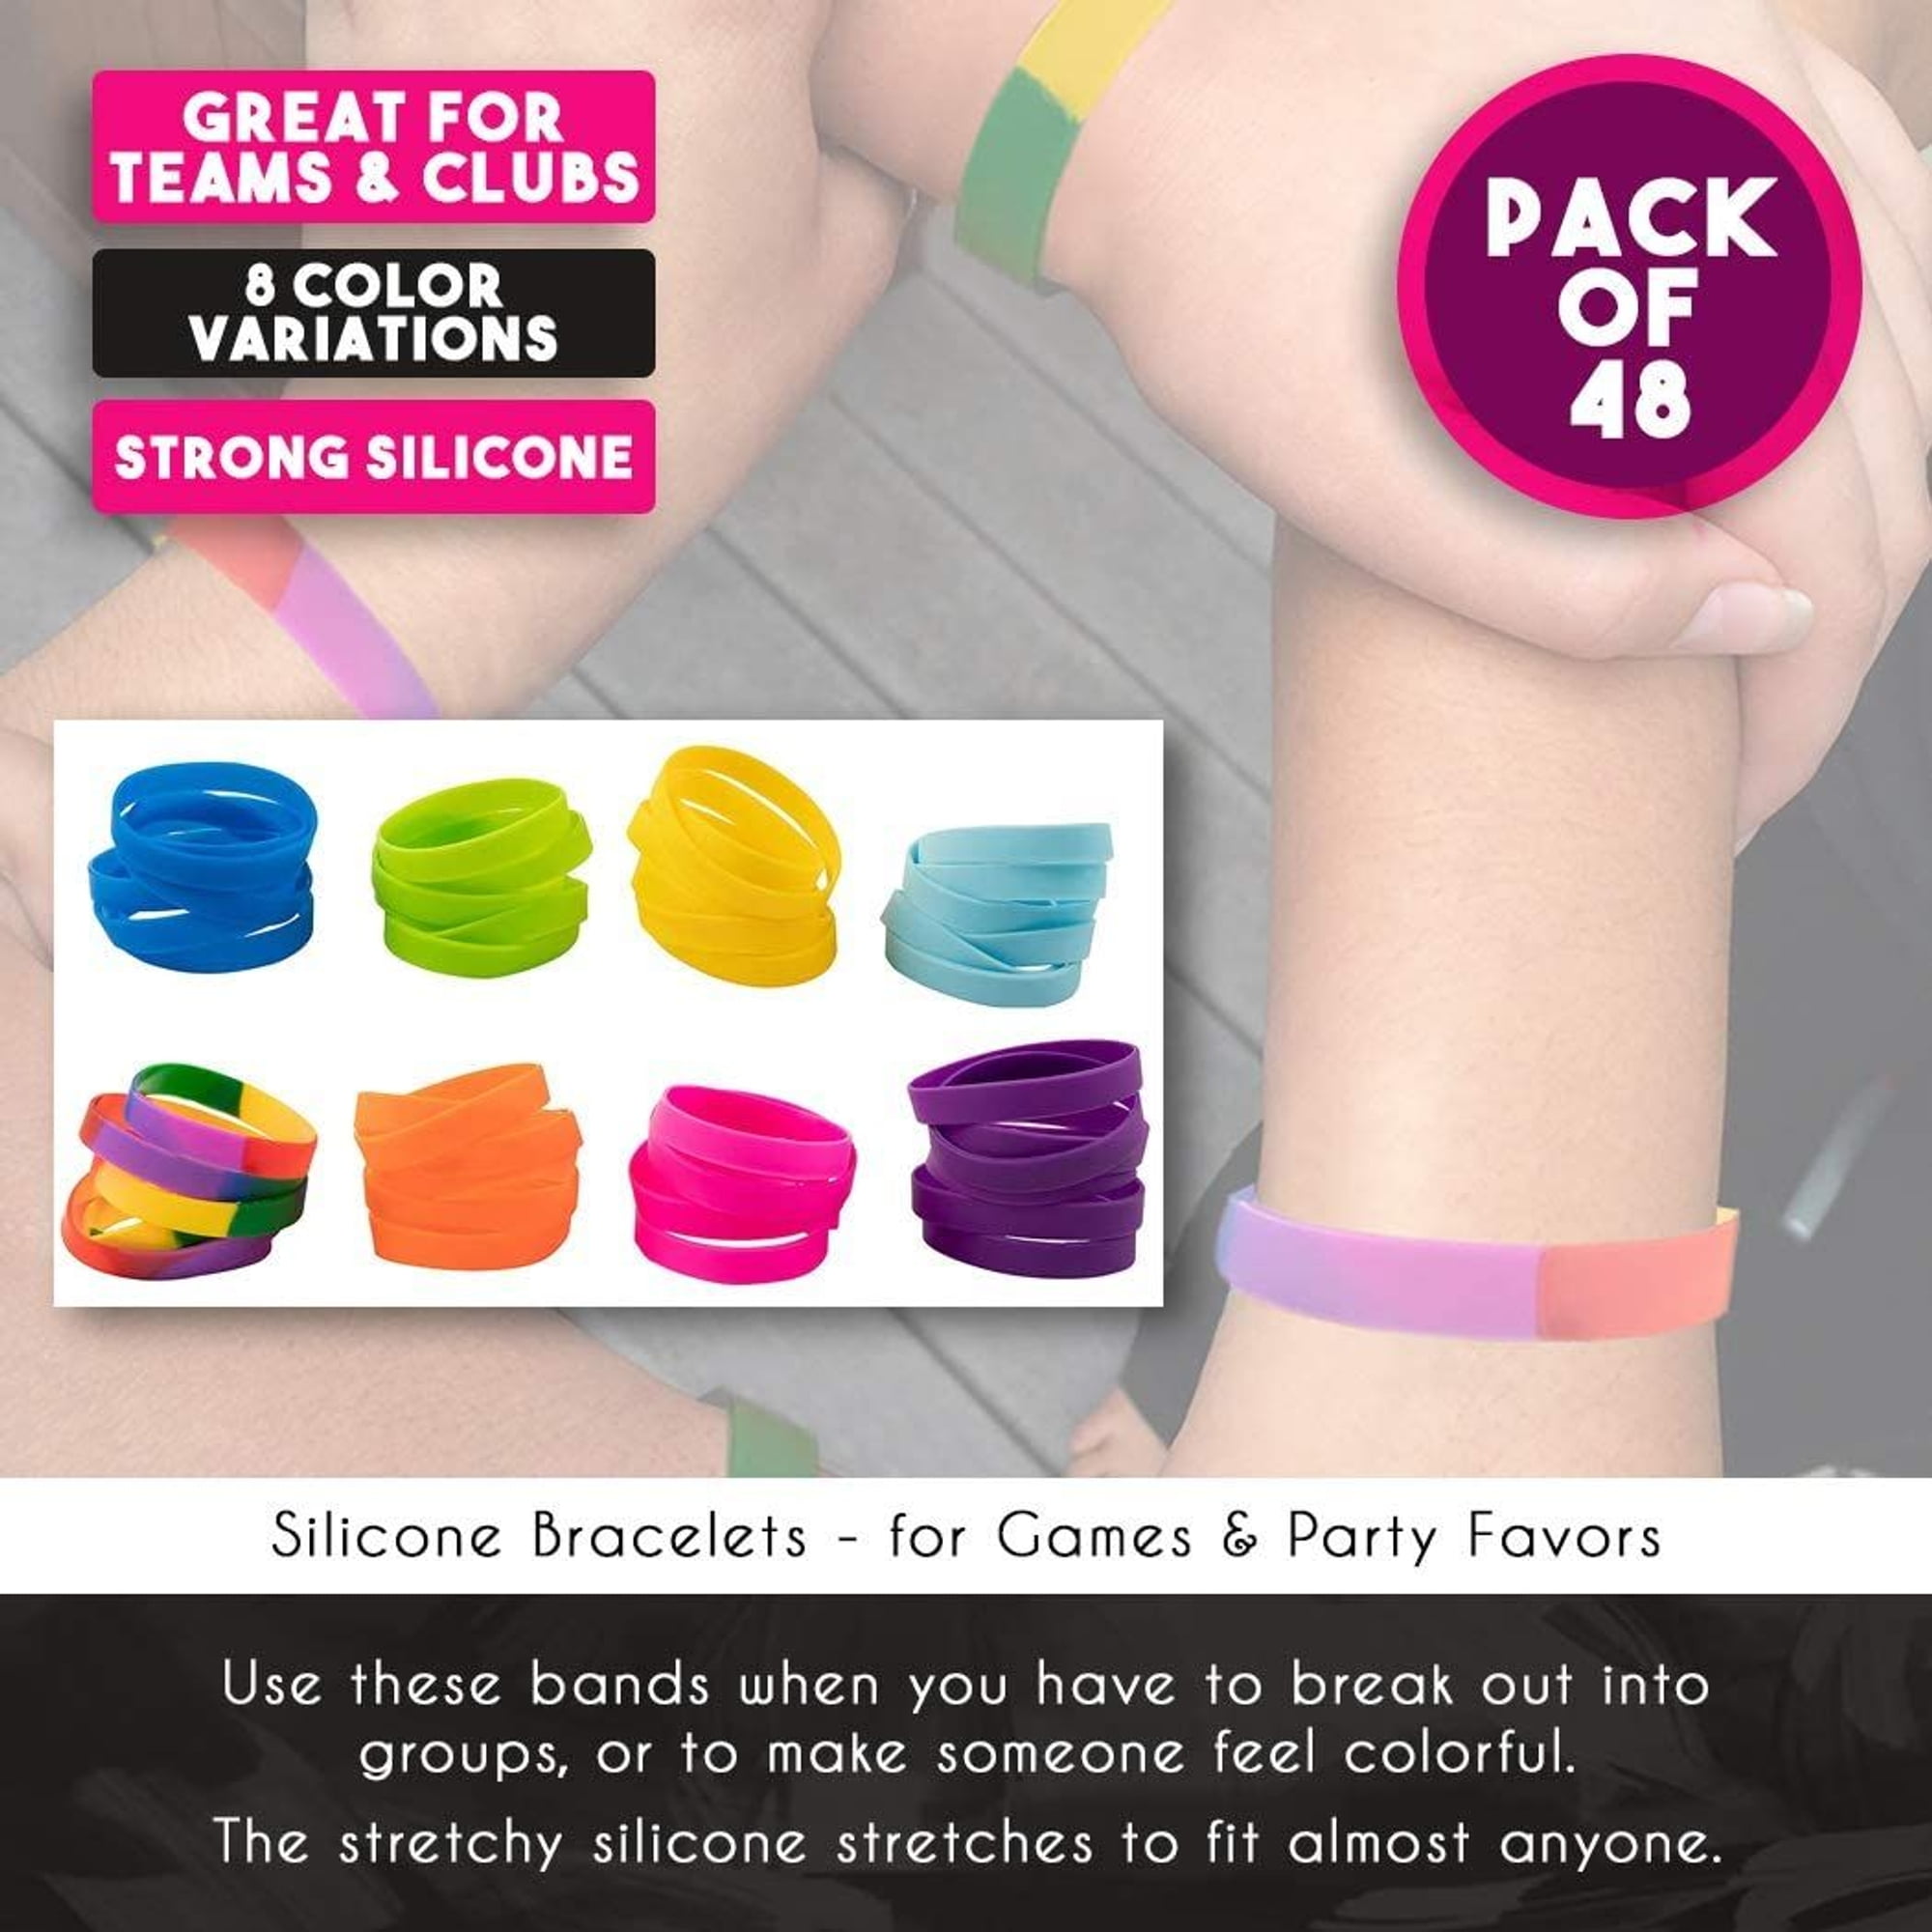 10pcs/lot Bulk Wholesale Fashion Multicolor Silicone Bracelet For